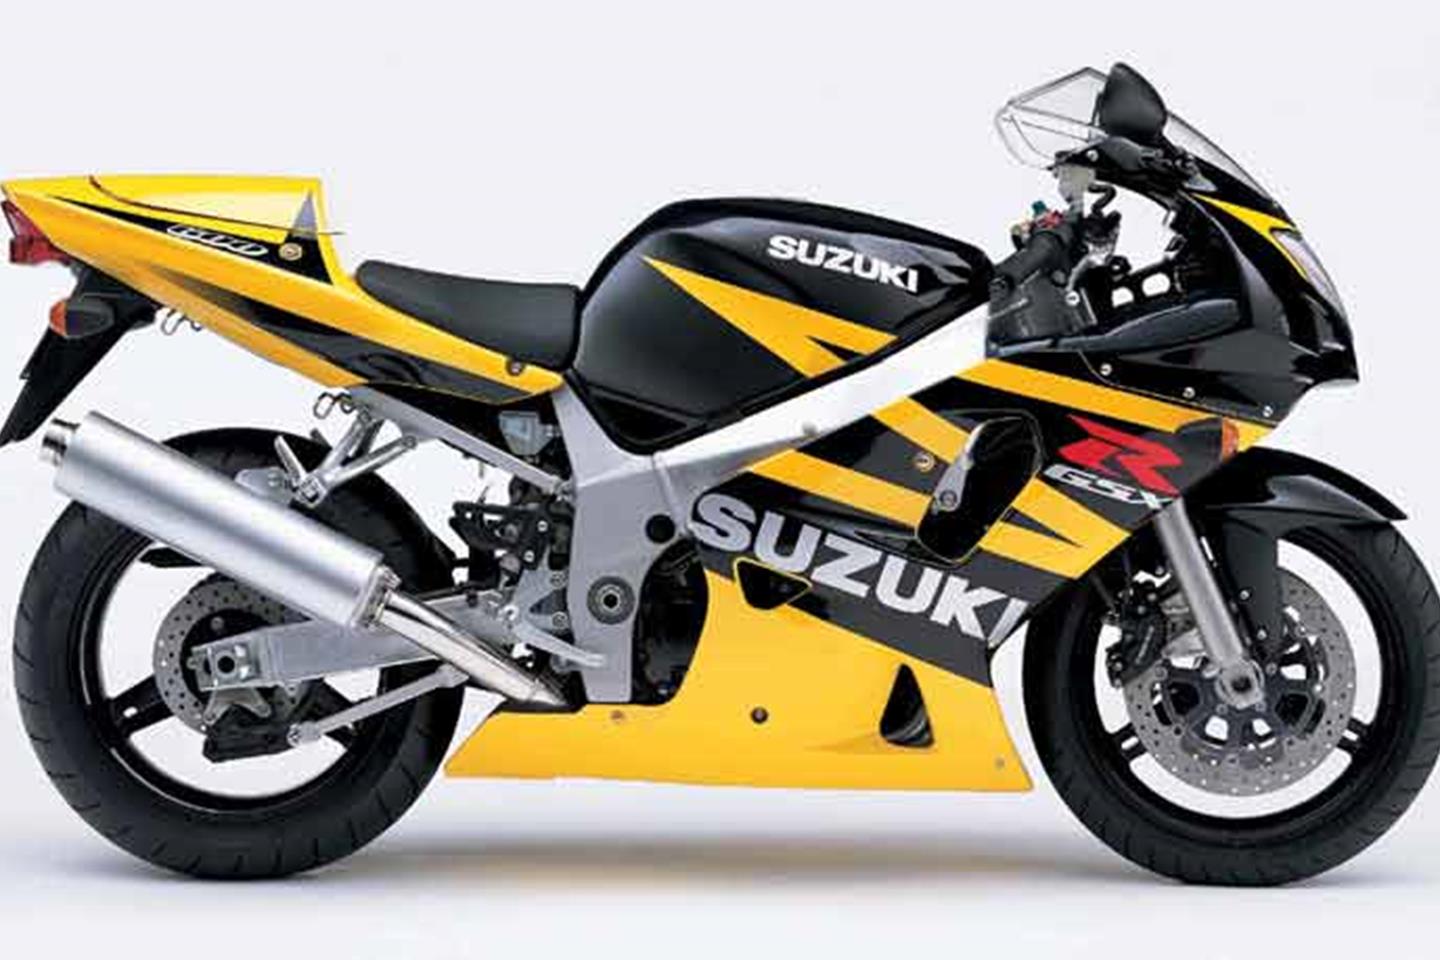 SUZUKI GSX-R600 (2001-2003) Review | Specs & Prices